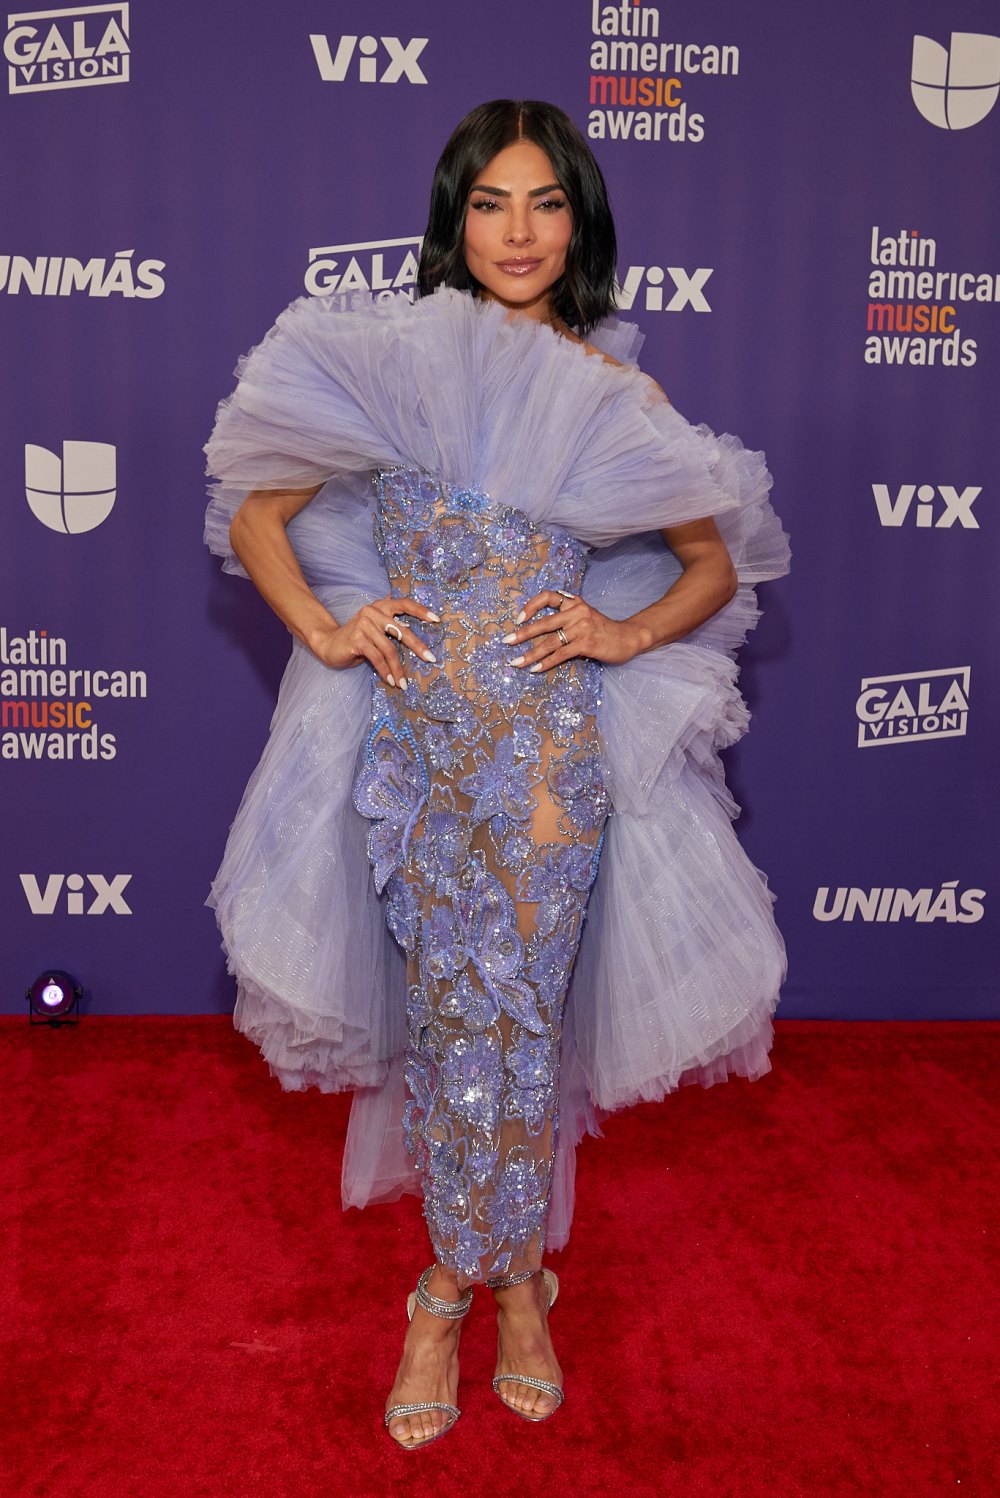 La actriz y conductora Alejandra Espinoza en la alfombra roja de los Latin AMA's